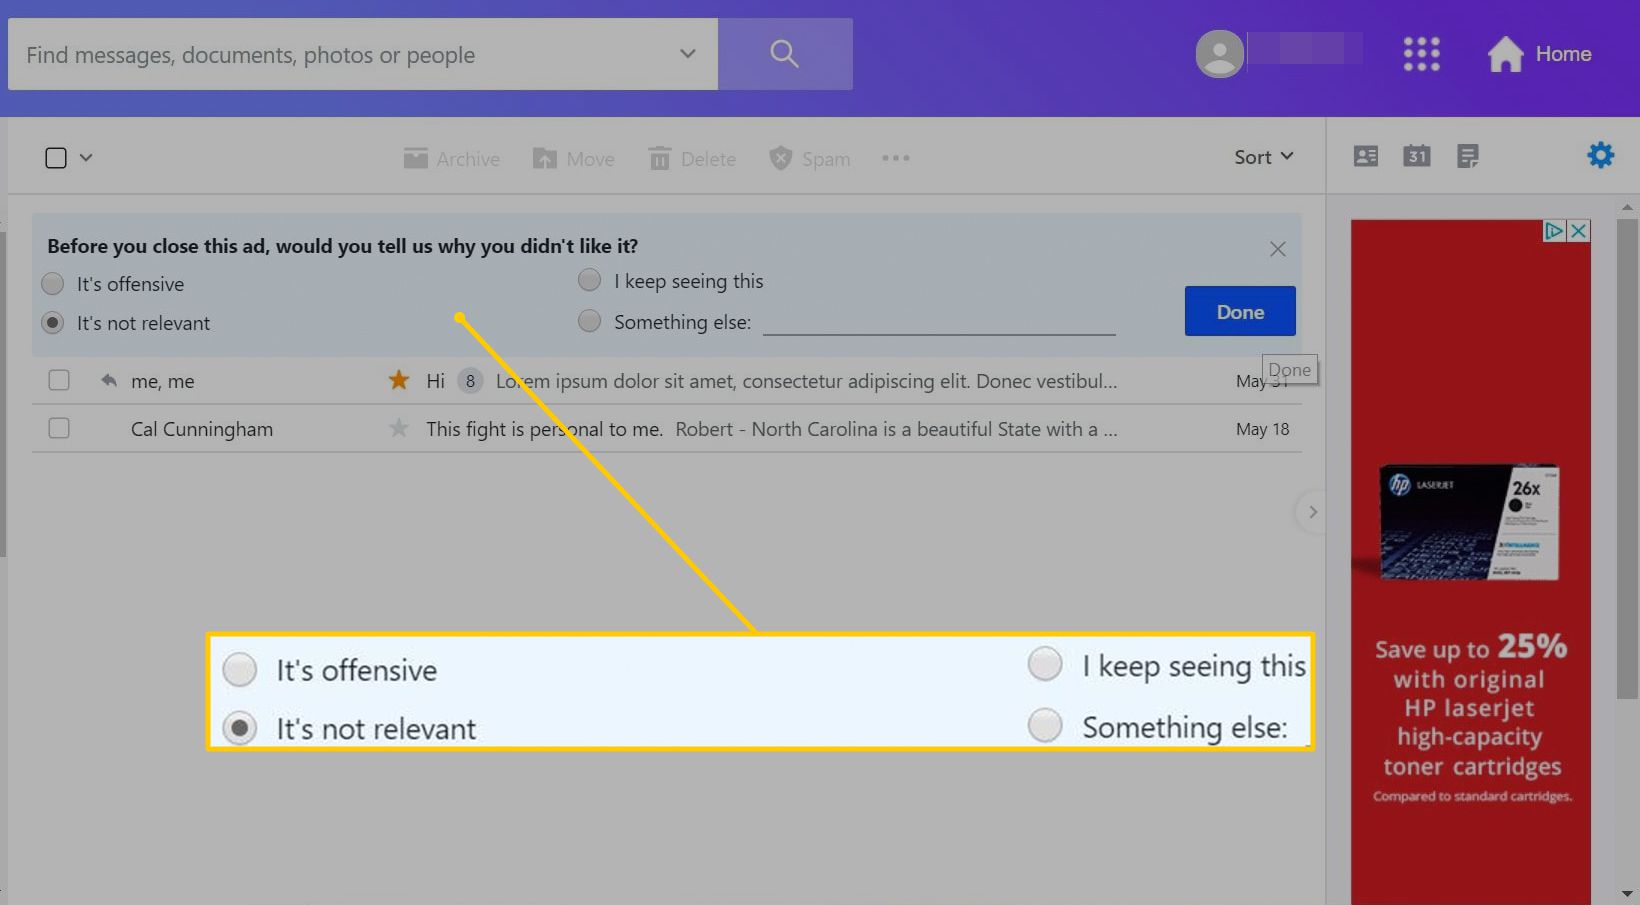 Vier opties waarom u een specifieke advertentie op Yahoo Mail voor het web niet leuk vindt